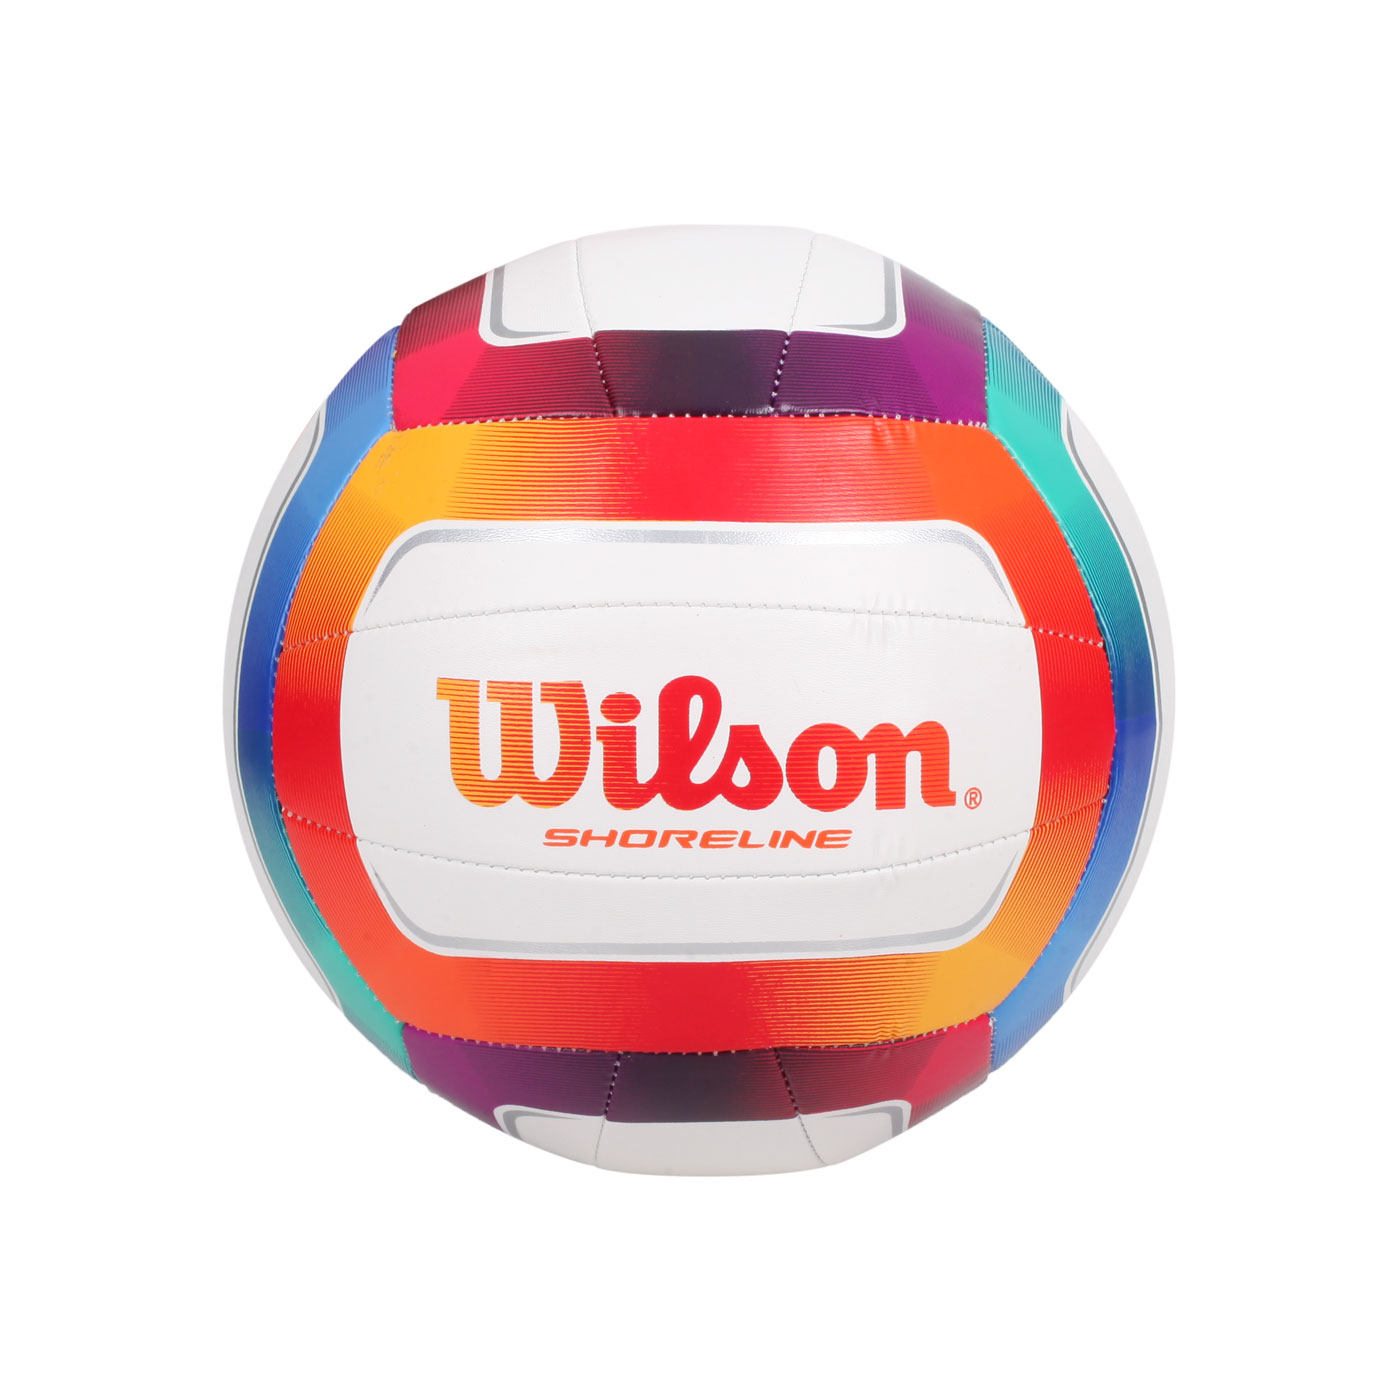 WILSON 沙灘排球-SL彩色款#5 WTH12020XB - 白橘藍綠紫